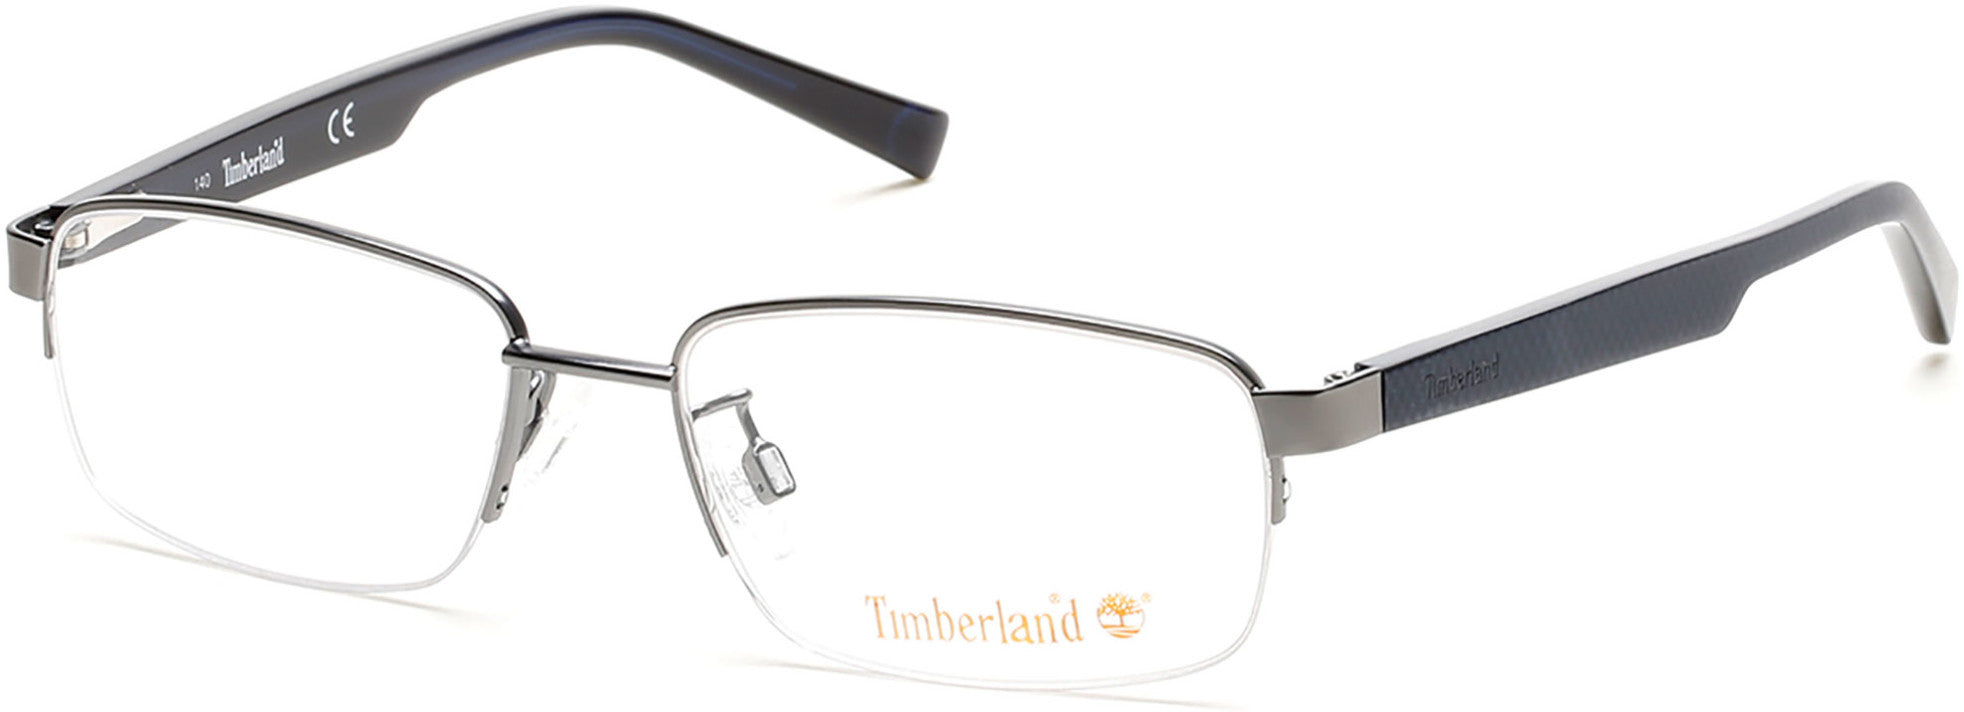 Timberland TB1548 Eyeglasses 009-009 - Matte Gunmetal